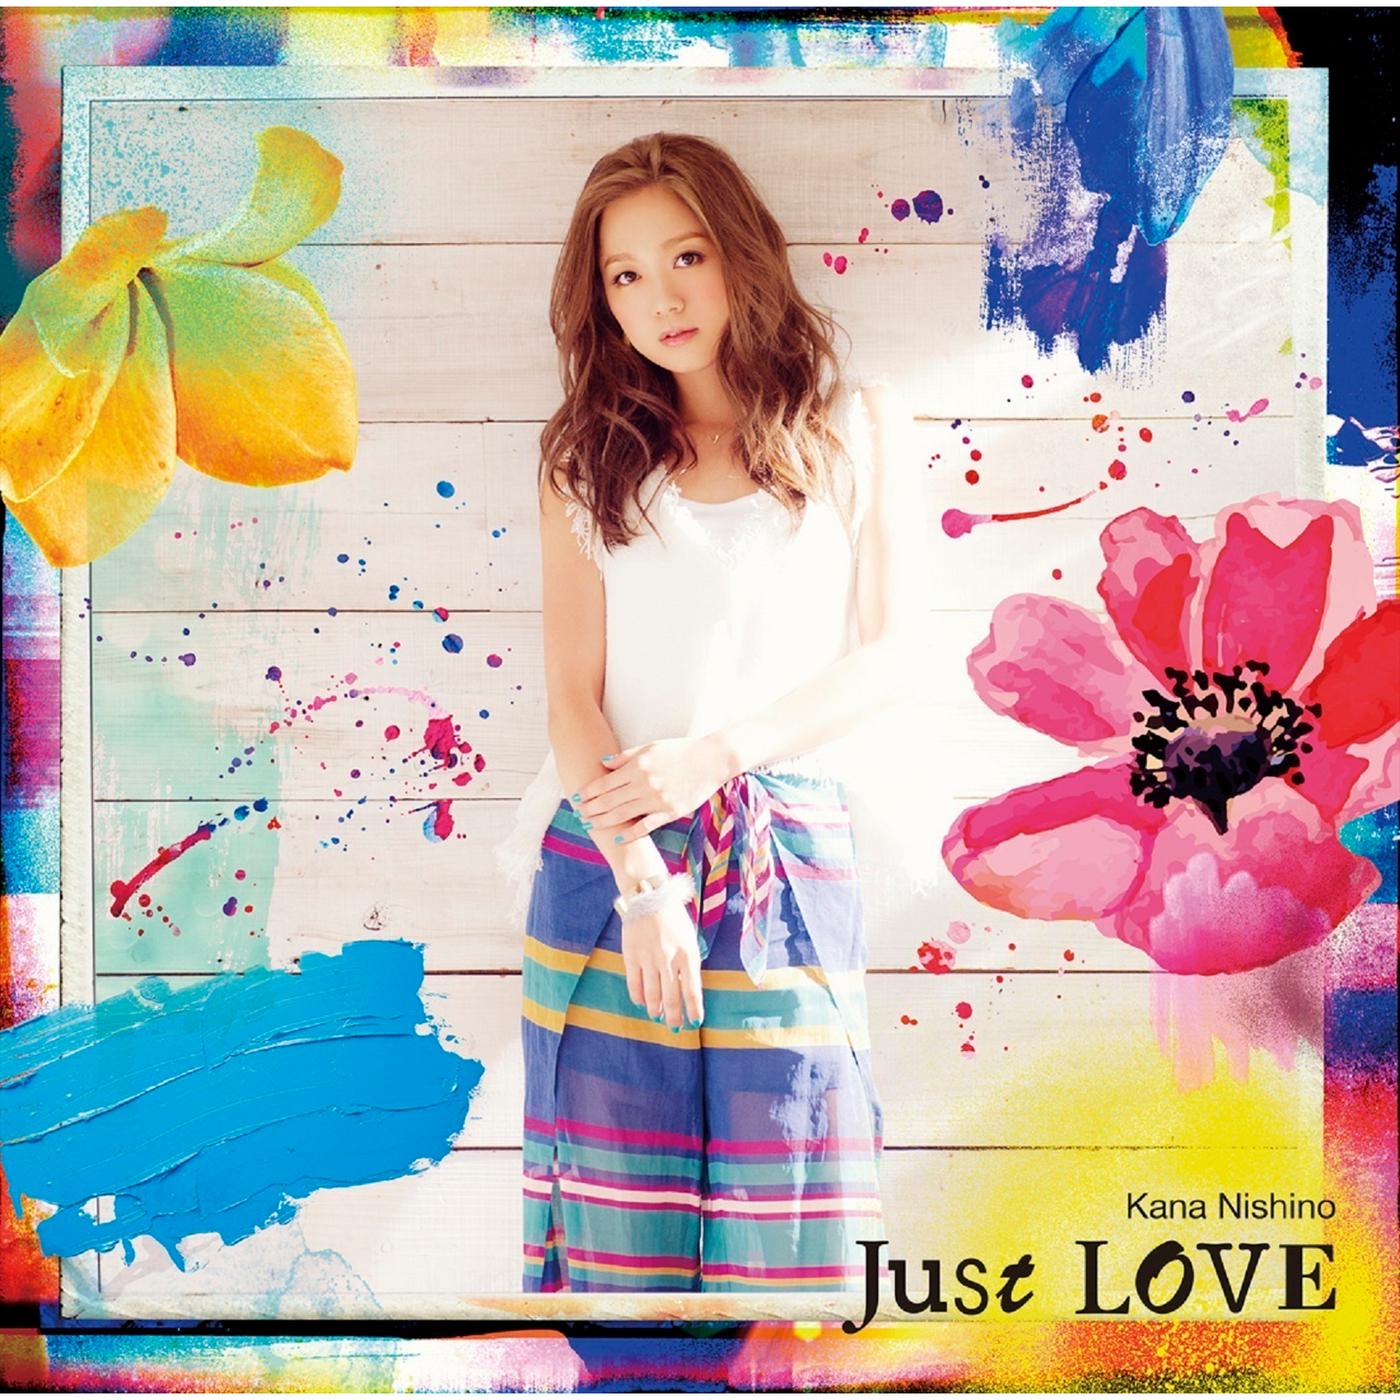 君が好き歌词 歌手西野カナ-专辑Just LOVE-单曲《君が好き》LRC歌词下载